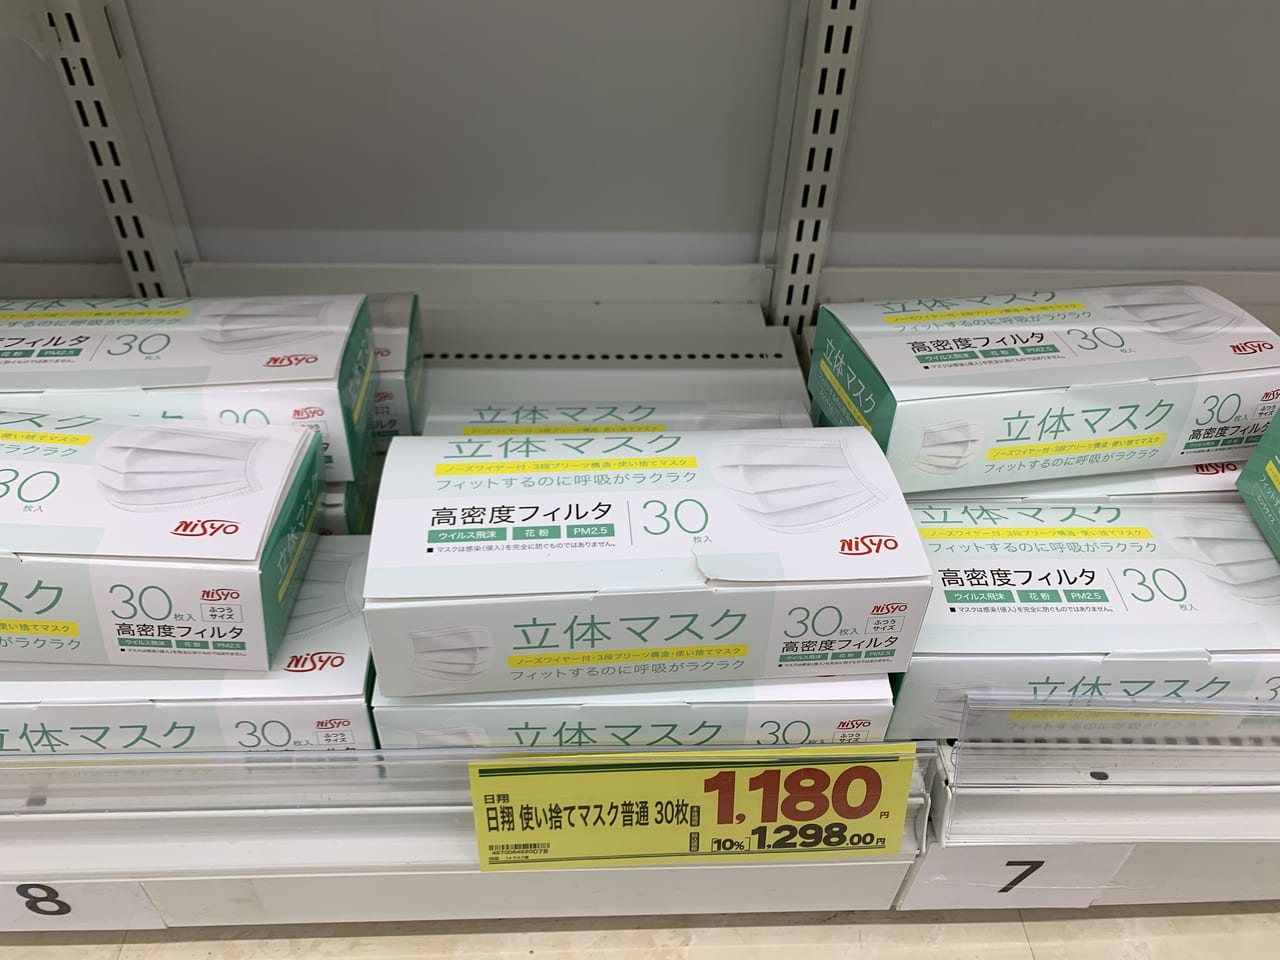 神戸市垂水区 マスク底値なるか ウエルシア垂水小束山店にて新入荷された箱マスクの価格を確認してきました 号外net 神戸市垂水区 須磨区